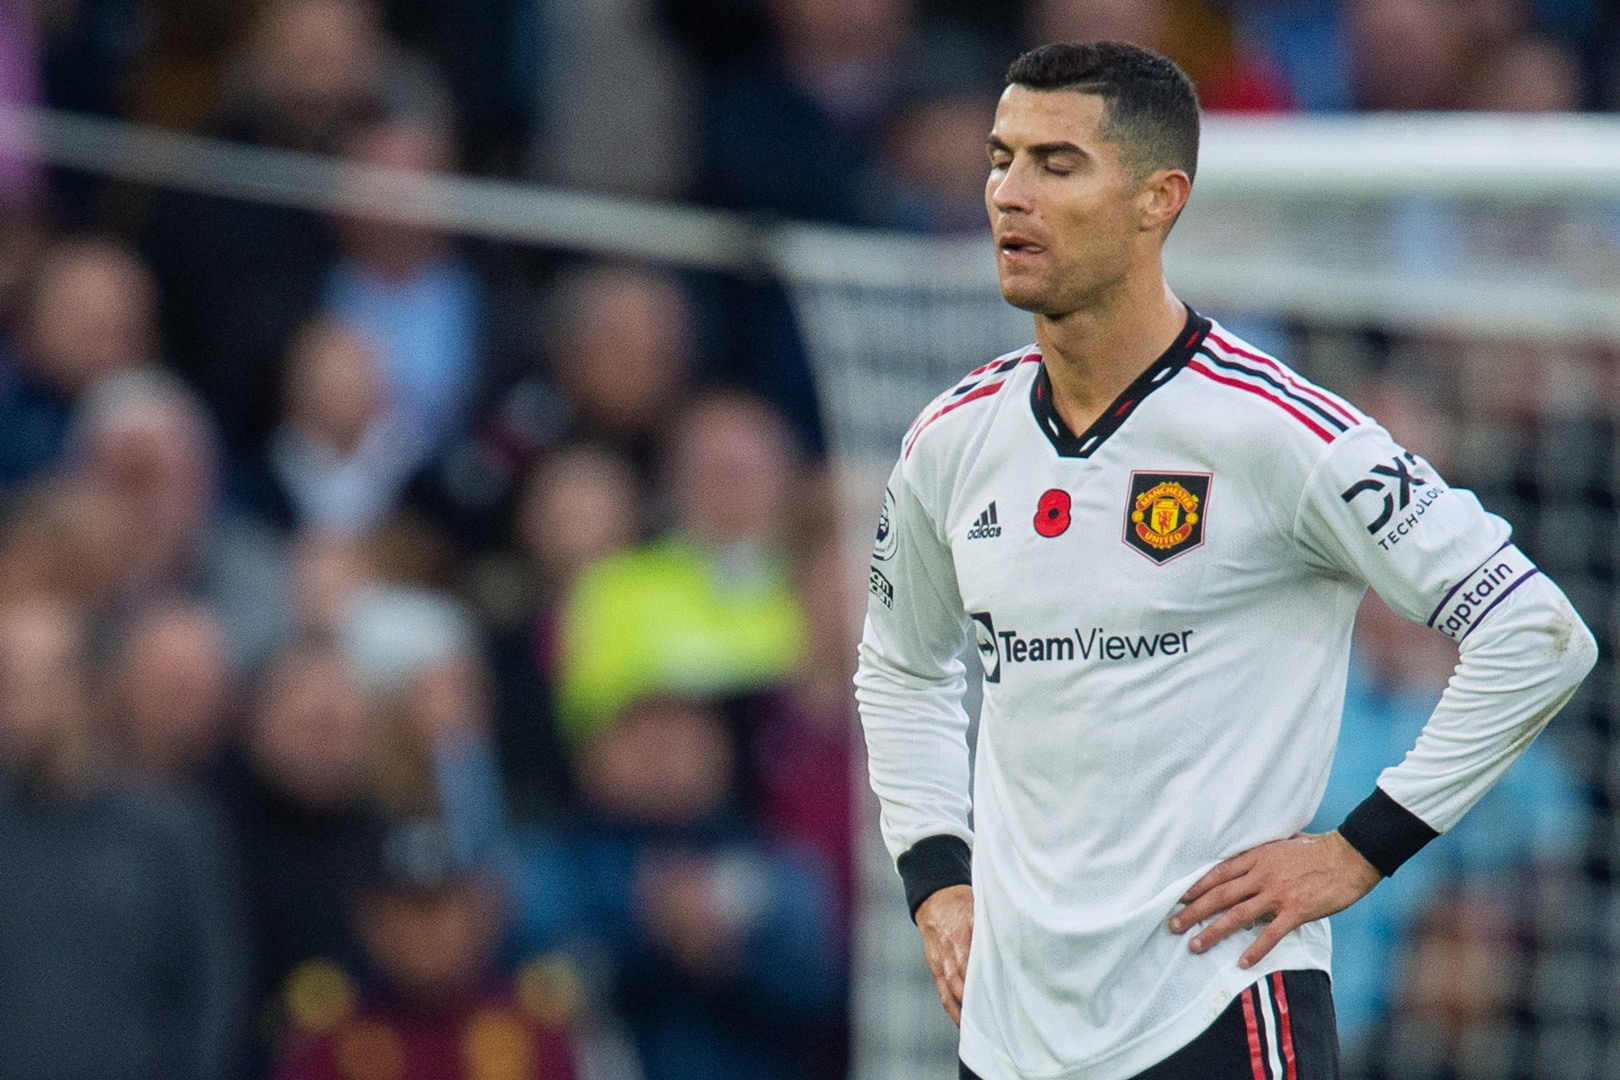 Rạn nứt giữa Ronaldo và M.U: Kế hoạch hay cảm xúc hỗn độn của CR7